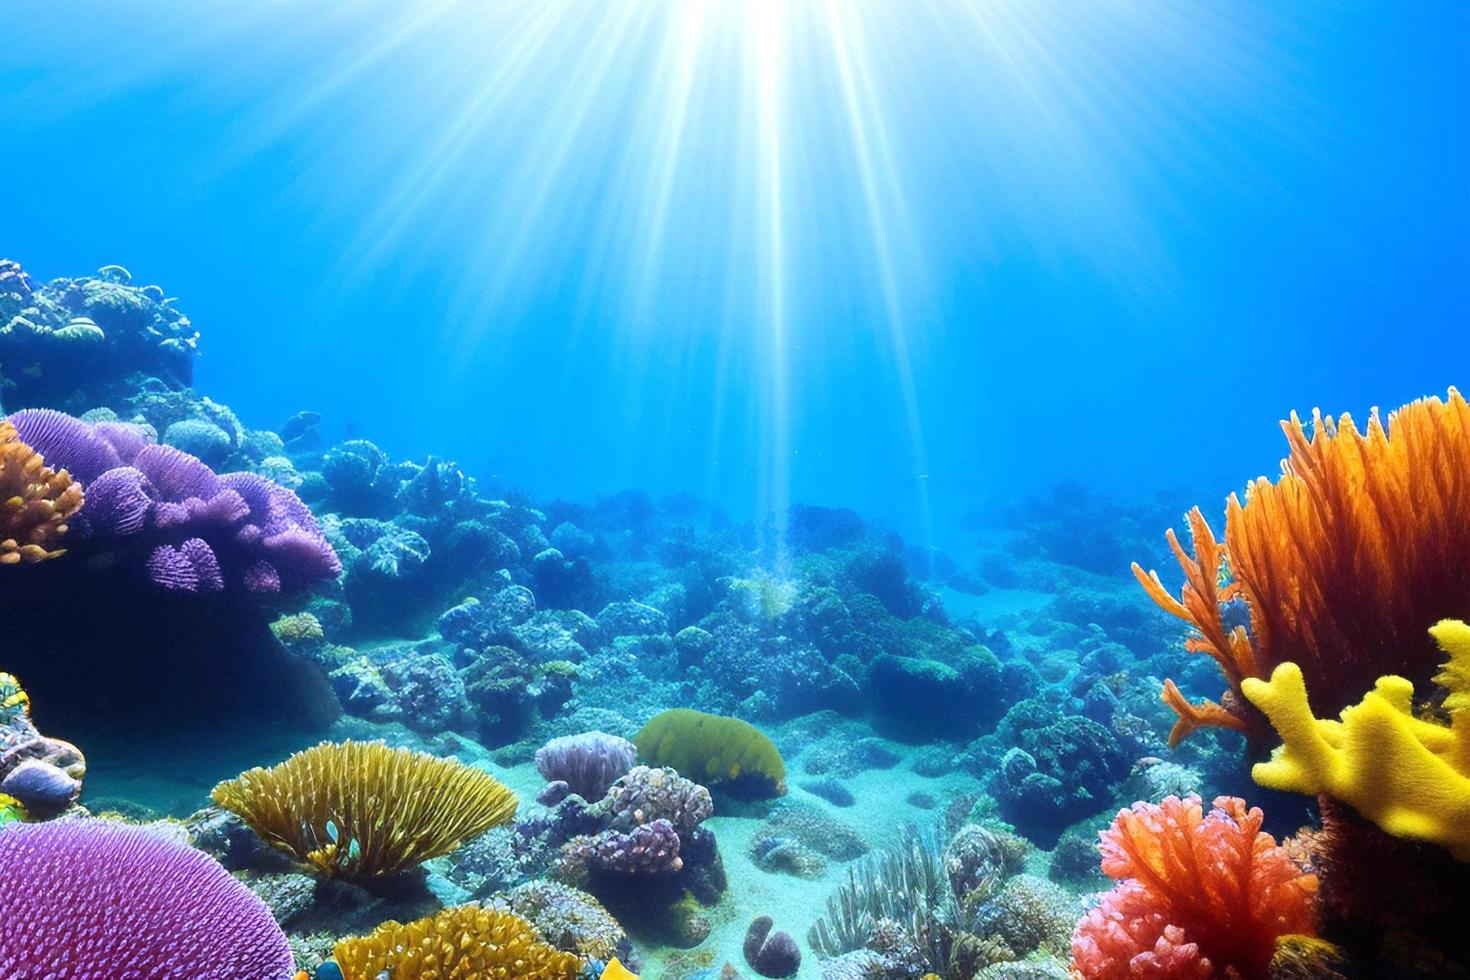 scène sous-marine. récif corallien de l'océan sous l'eau. monde marin sous fond d'eau. photo